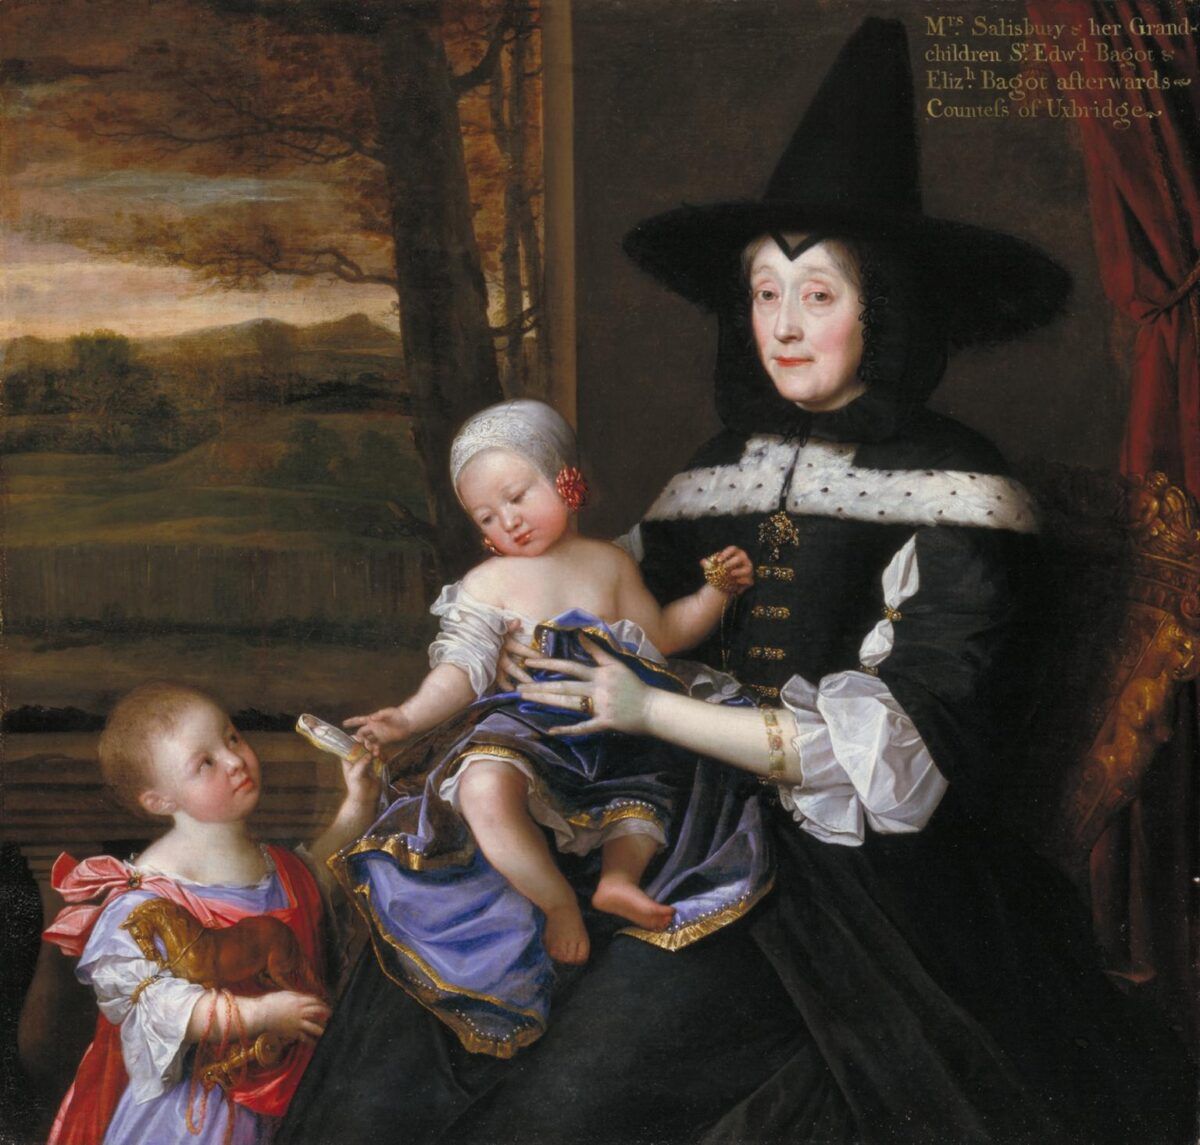 Portrait de Mme Salesbury avec ses petits-enfants Edward et Elizabeth Bagot 1675-6 John Michael Wright 1617-1694 Présenté par les Patrons of British Art à travers la Tate Gallery Foundation 1993 http://www.tate.org.uk/art/work/T06750